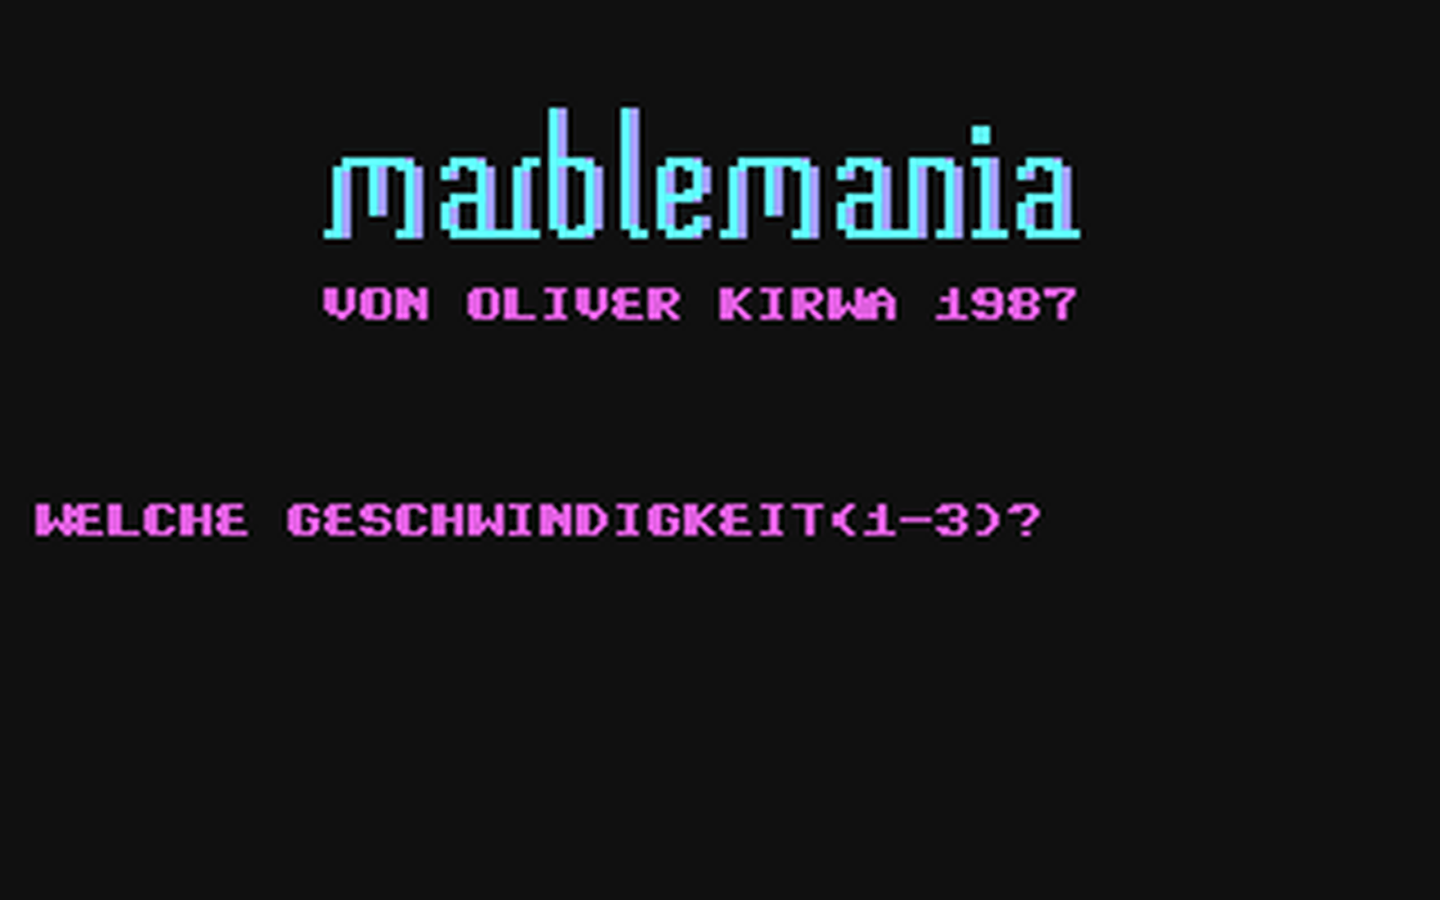 C64 GameBase Marblemania Markt_&_Technik/64'er 1989